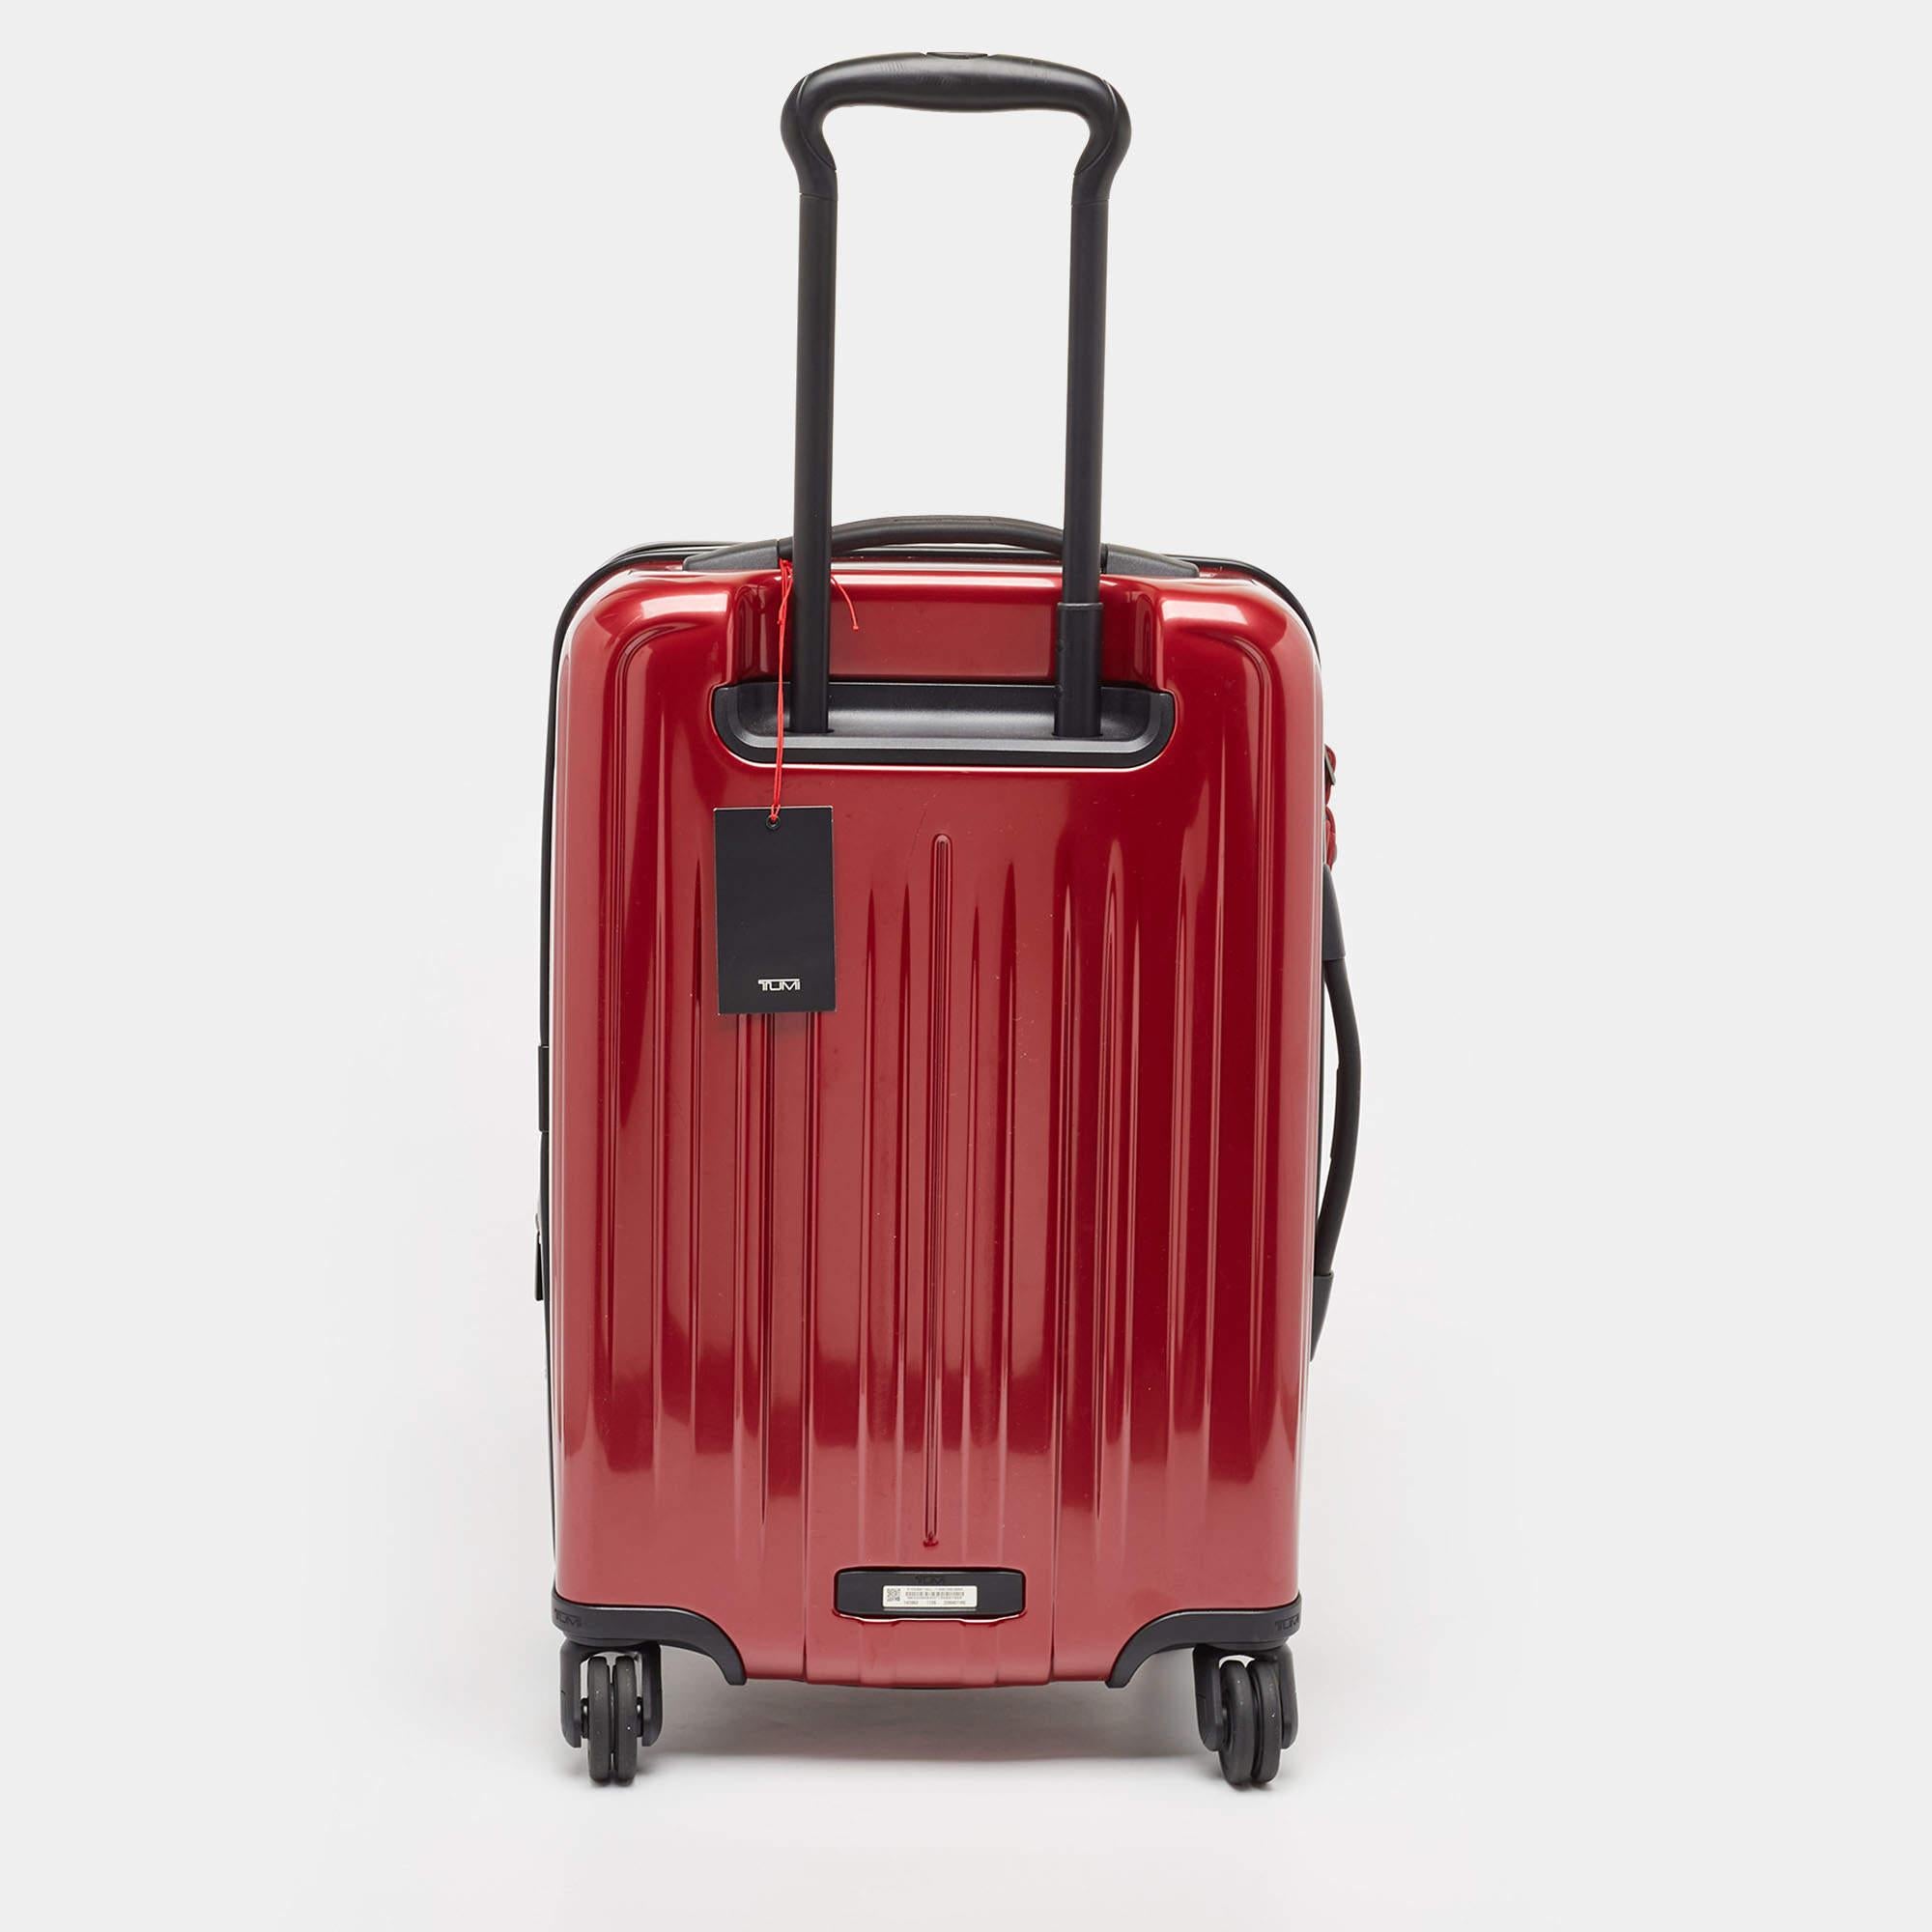 Dieser Koffer aus dem Hause TUMI ist ein Accessoire, zu dem Sie greifen werden, wenn Sie eine Reise planen. Er wurde aus den besten MATERIALEN hergestellt, um sowohl ansprechend als auch langlebig zu sein. Es ist eine lohnende Investition.

Enthält: